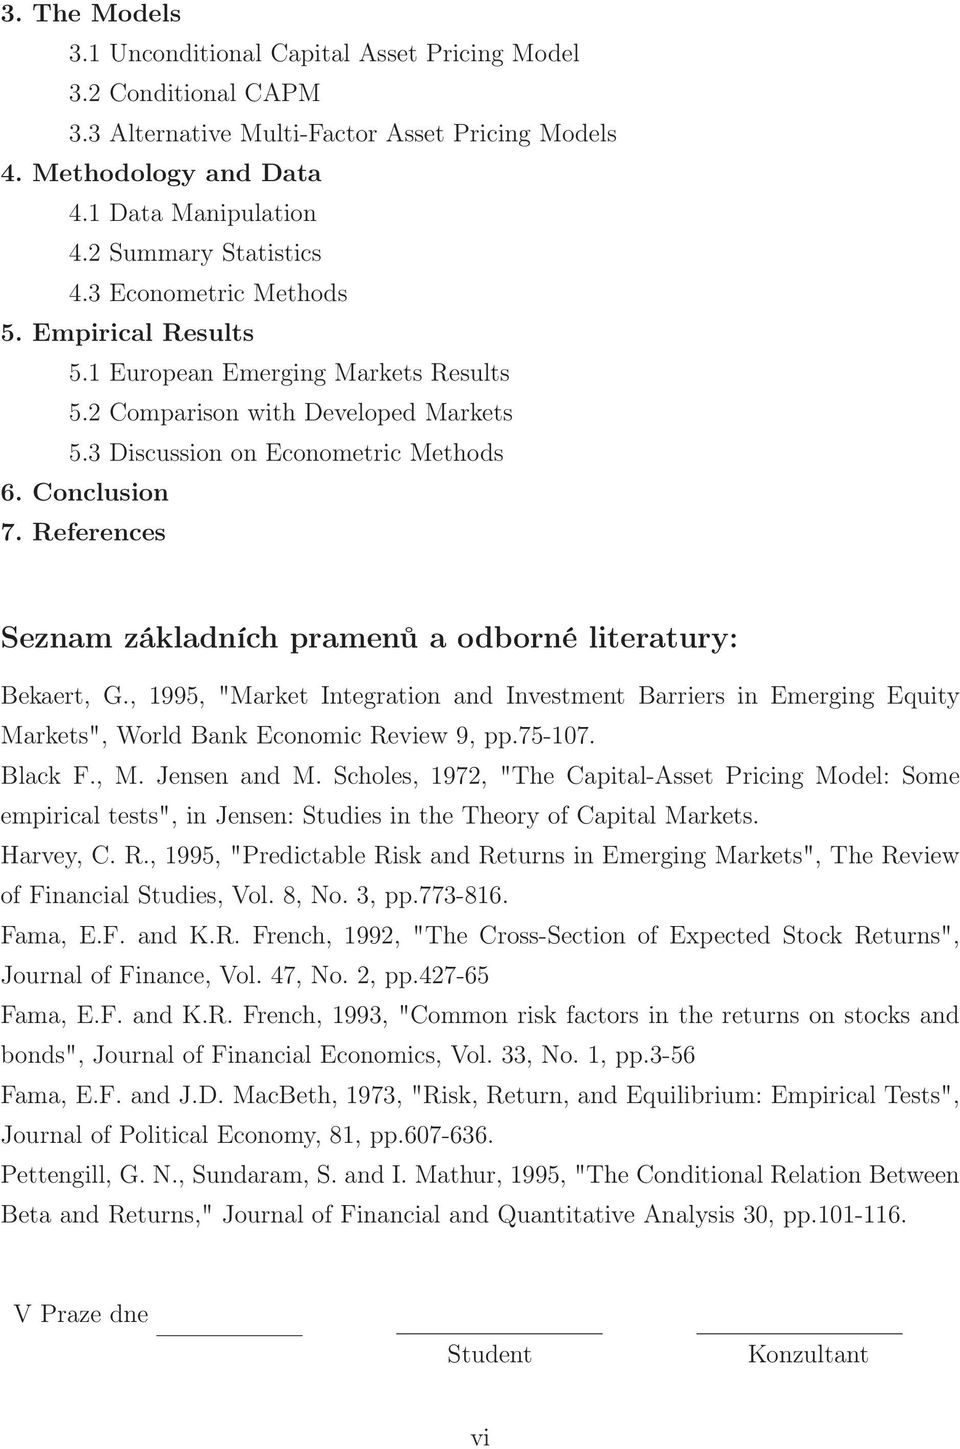 References Seznam základních pramenů a odborné literatury: Bekaert, G., 1995, "Market Integration and Investment Barriers in Emerging Equity Markets", World Bank Economic Review 9, pp.75-107. Black F.